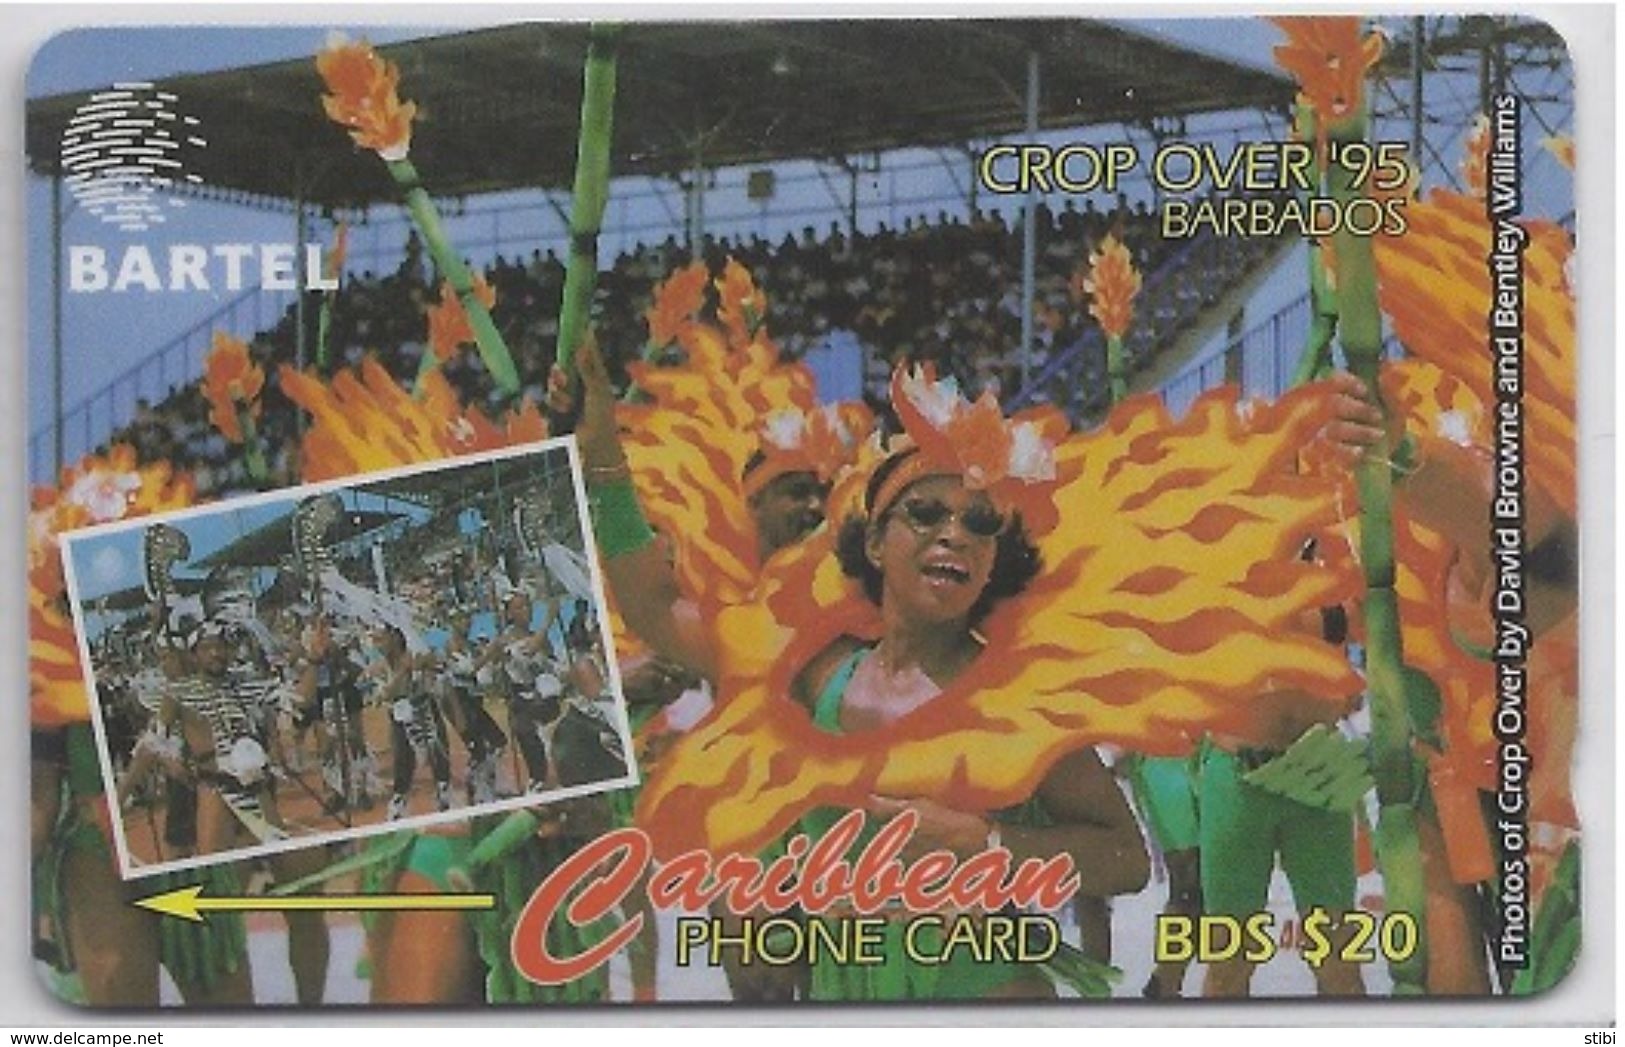 BARBADOS - CROP OVER '95 - 16CBDA - Barbados